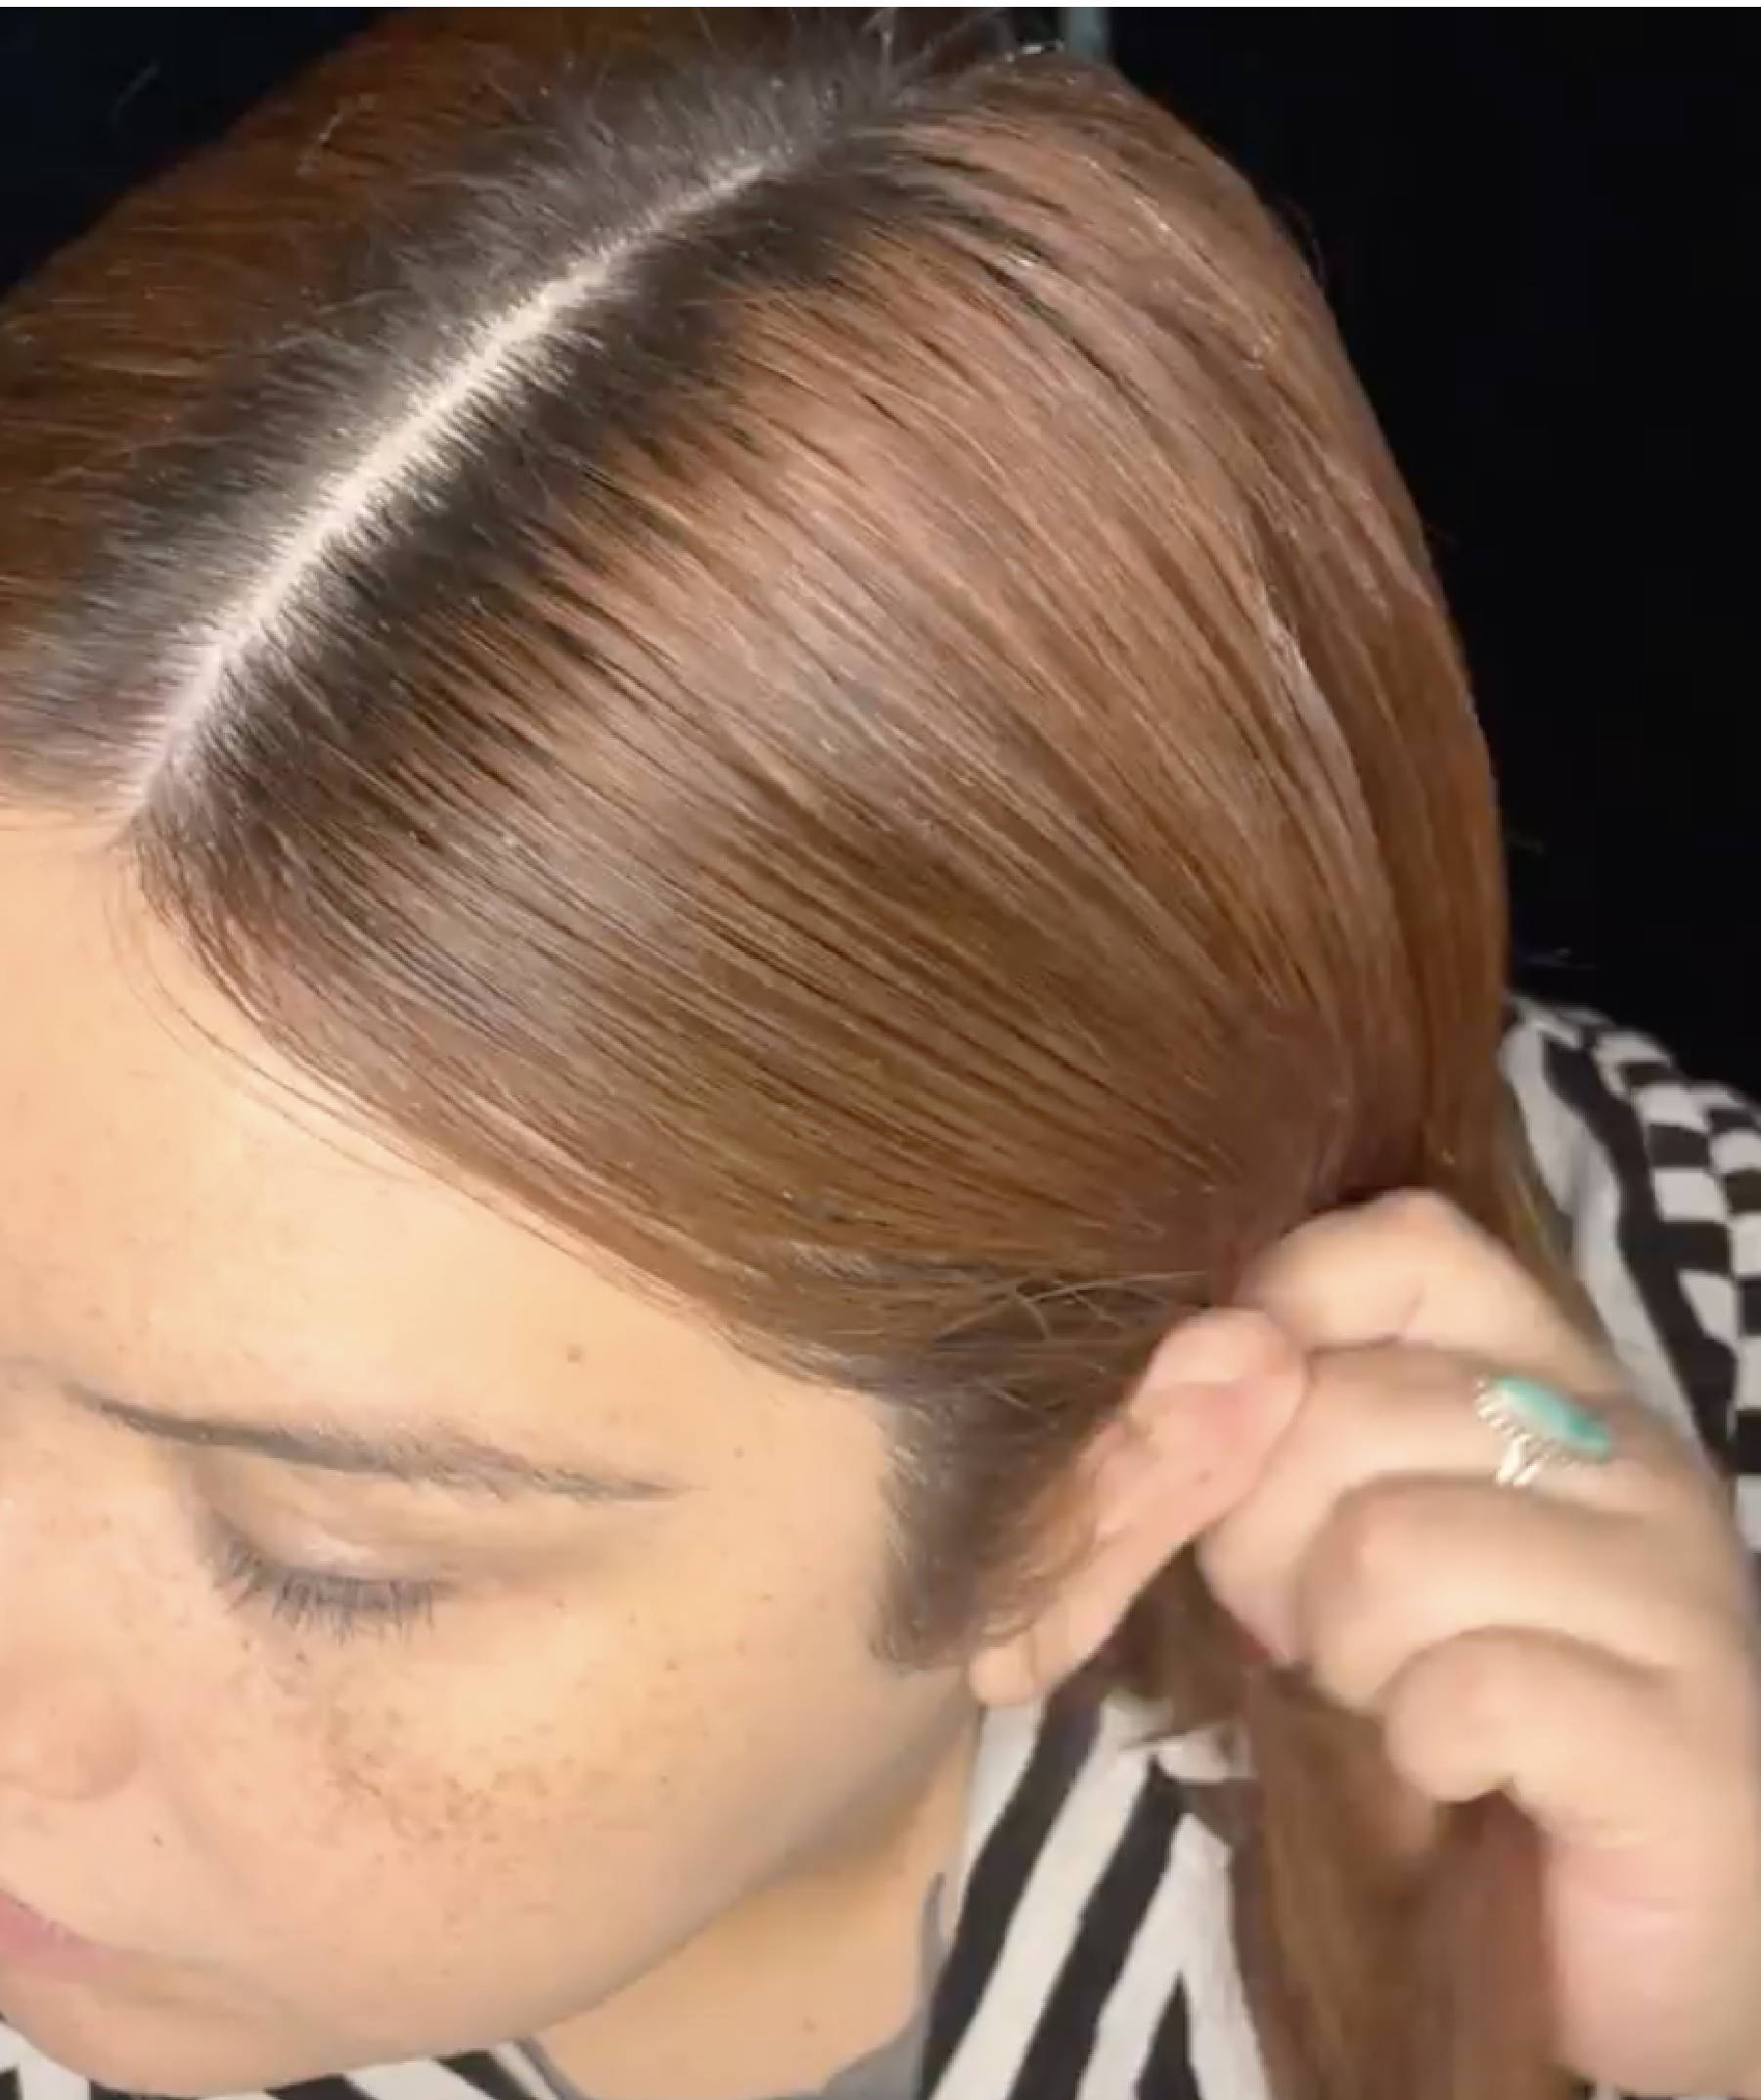 davines center part hair tutorial